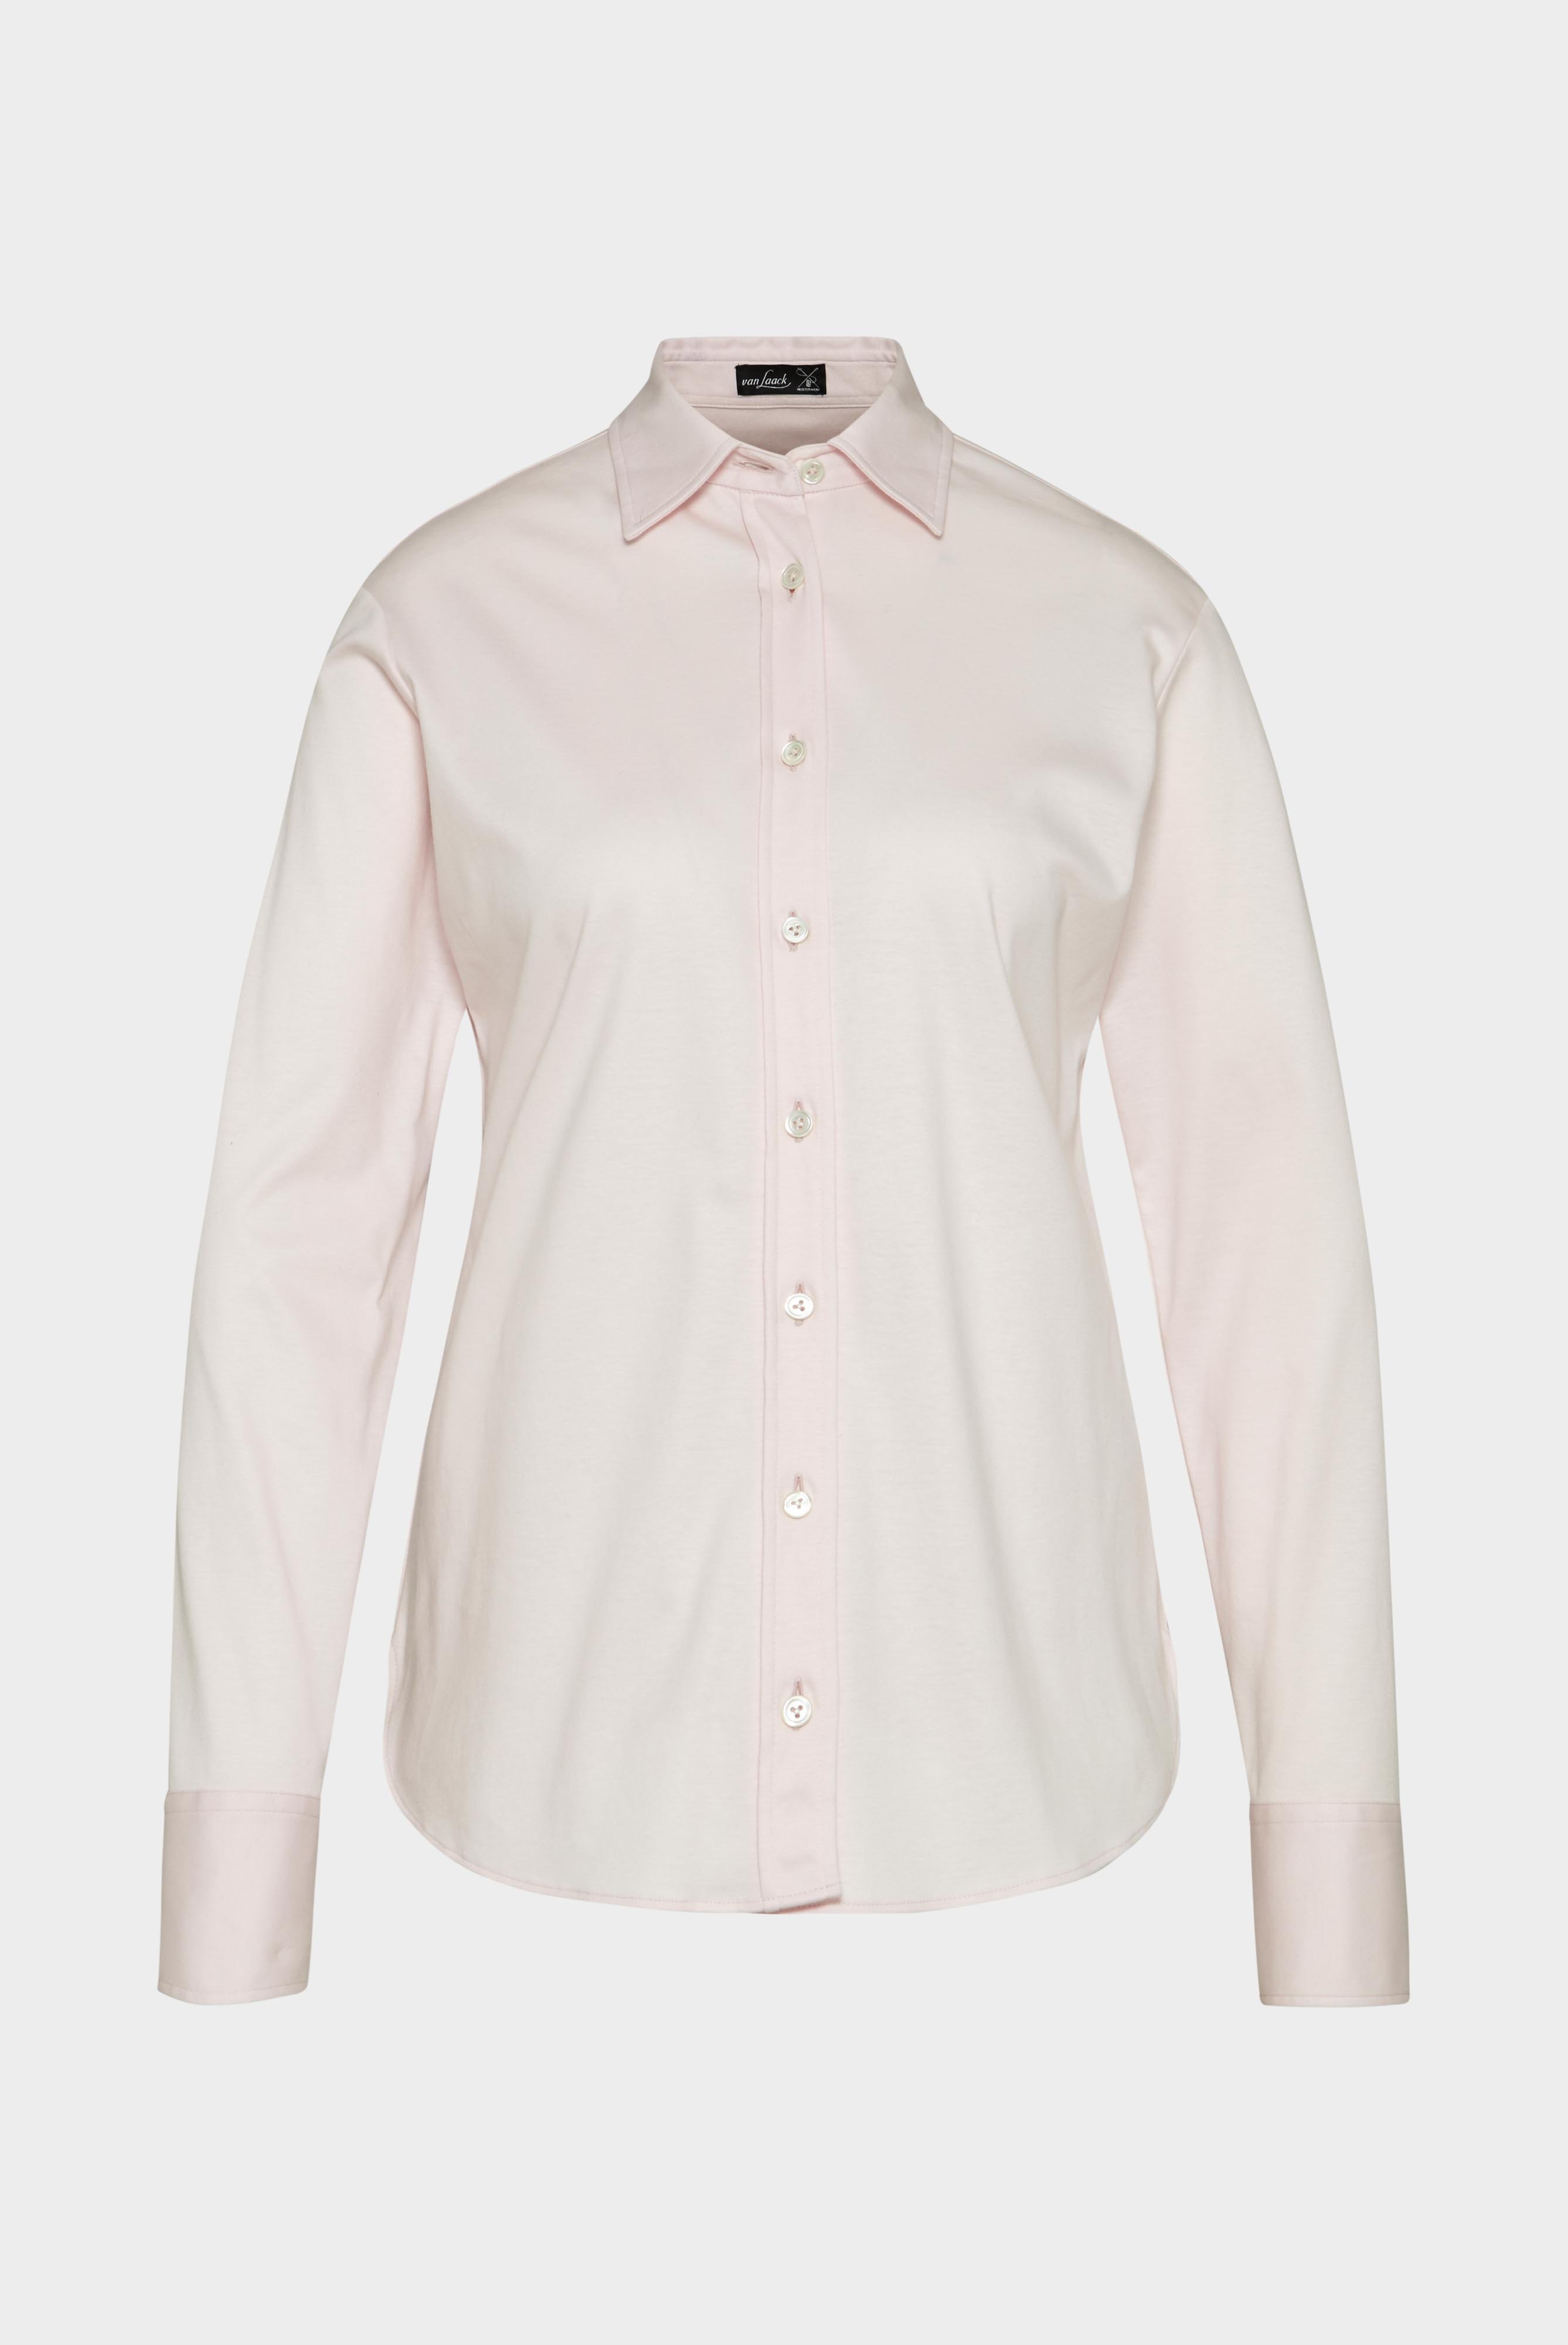 Casual Blusen+Taillierte Jersey Hemdbluse aus Schweizer Baumwolle+05.603Y..180031.510.44